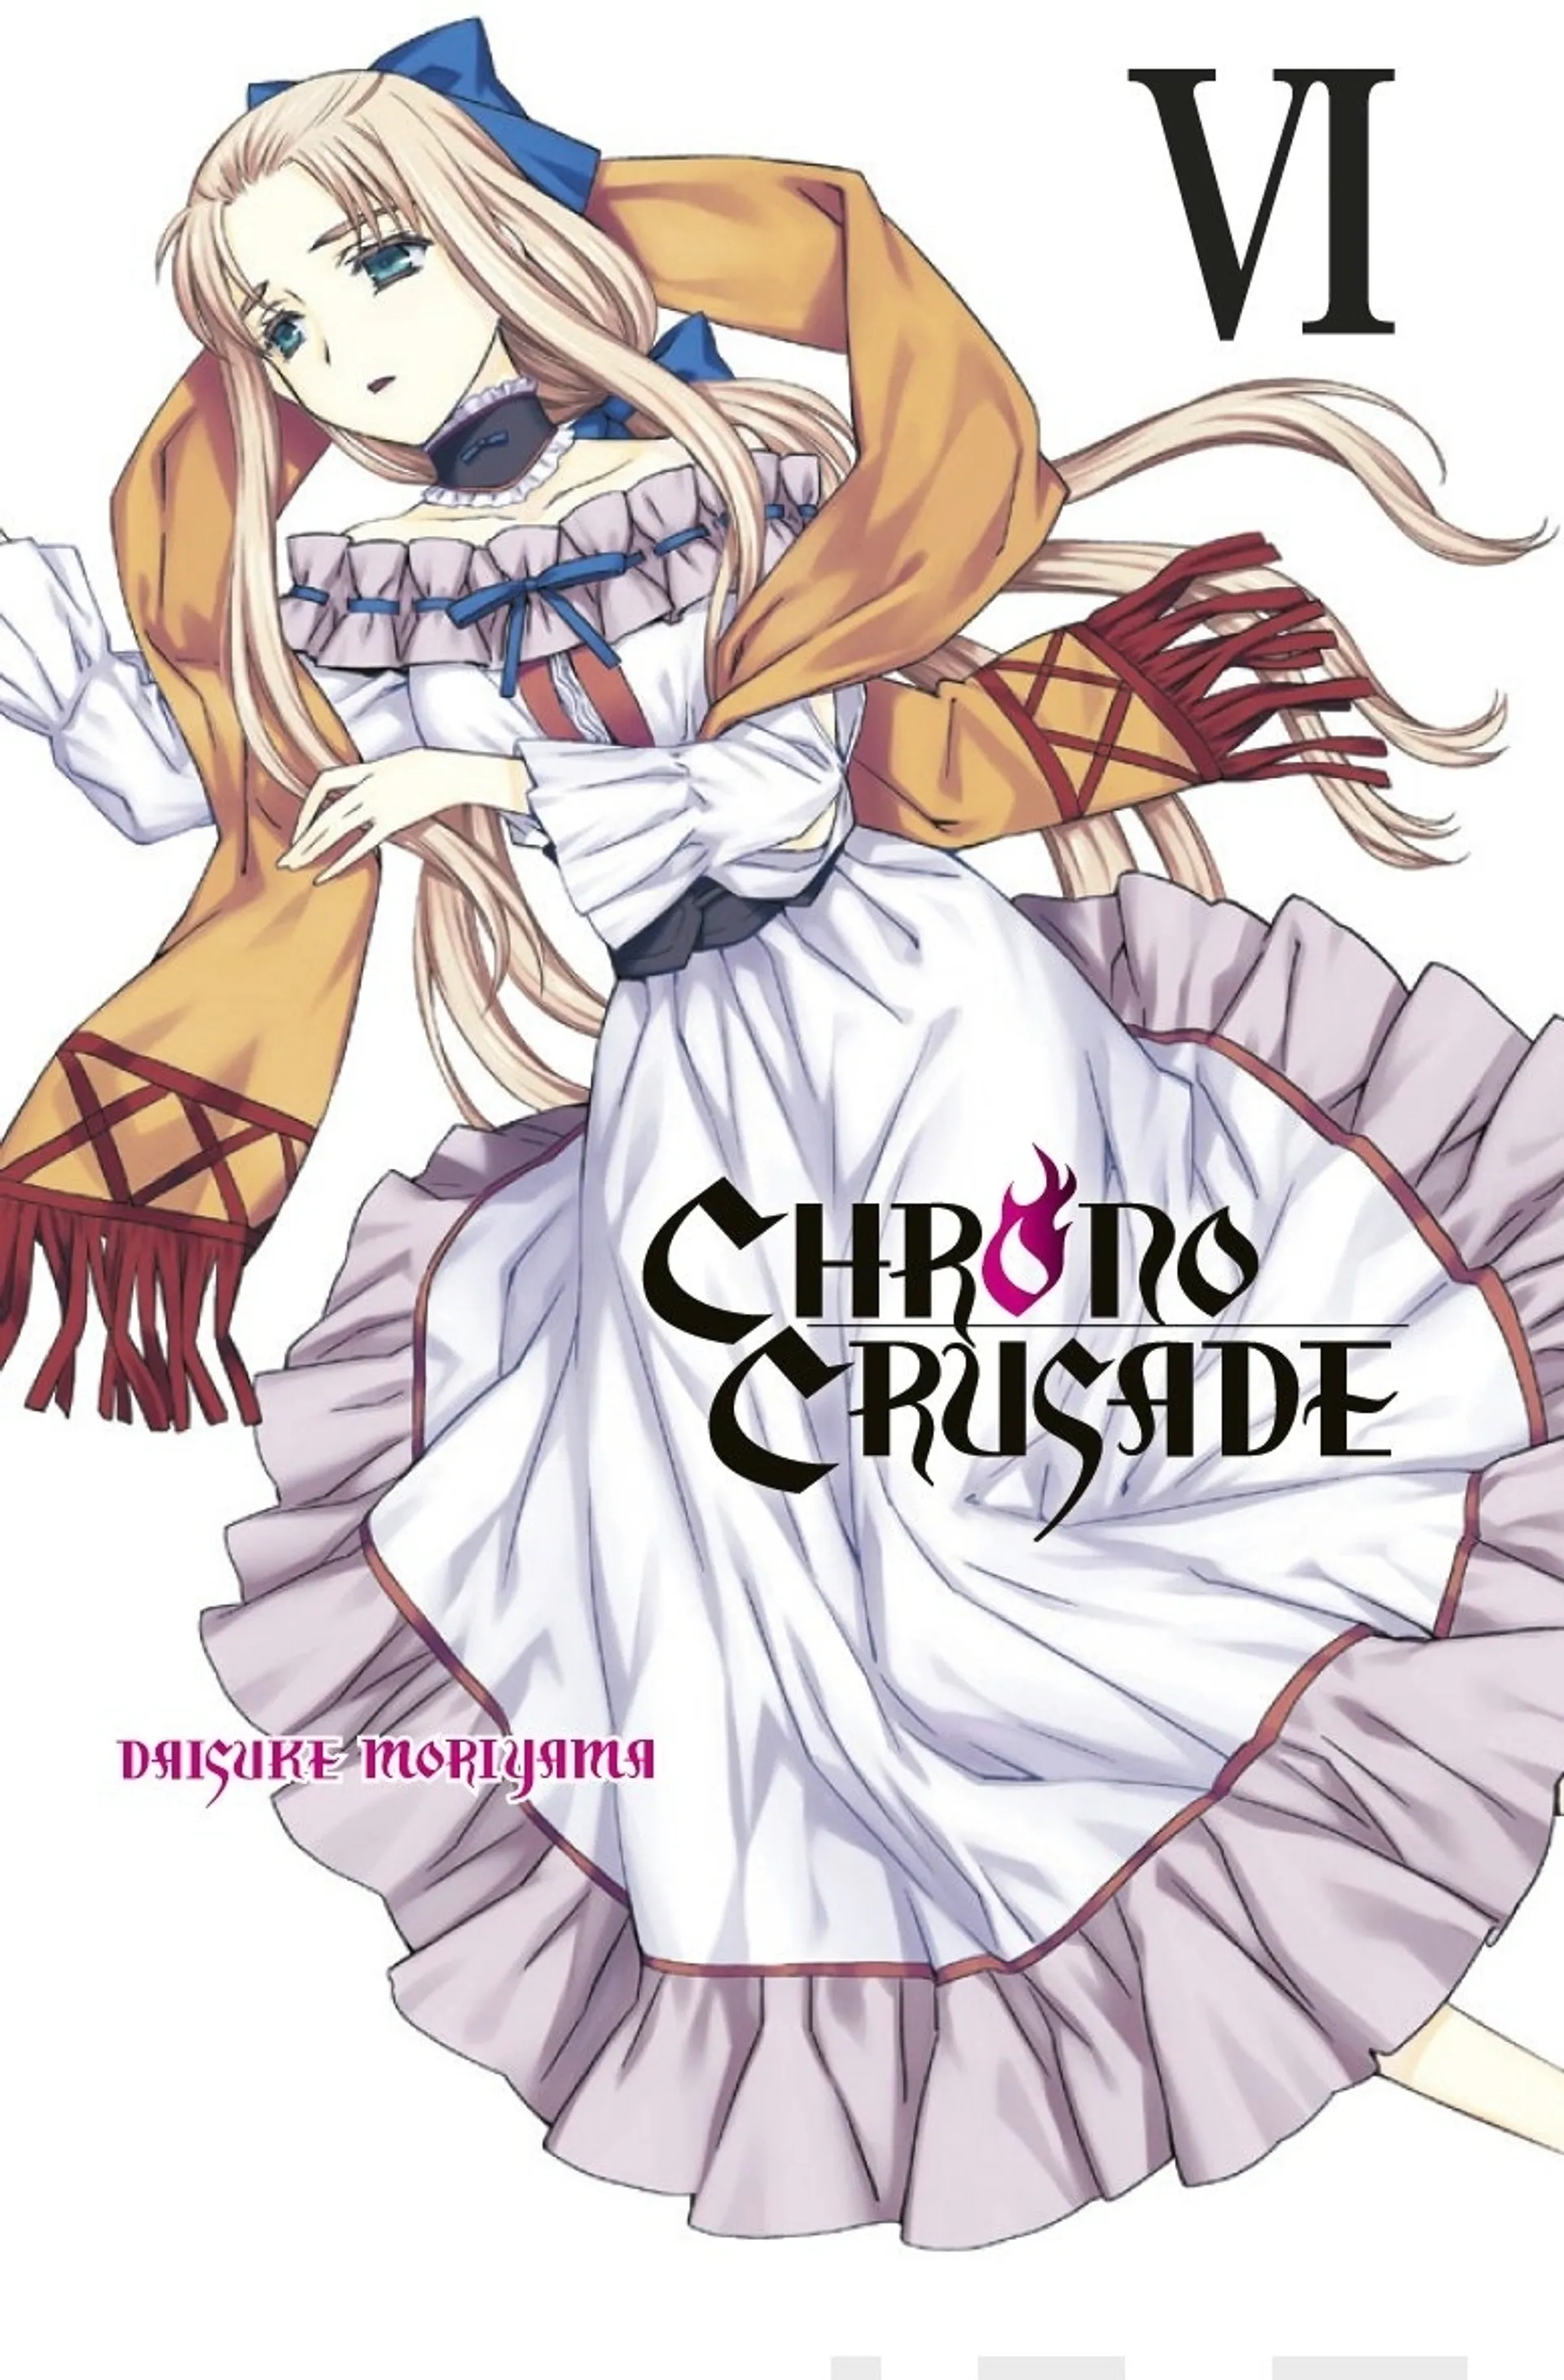 Chrono Crusade 6